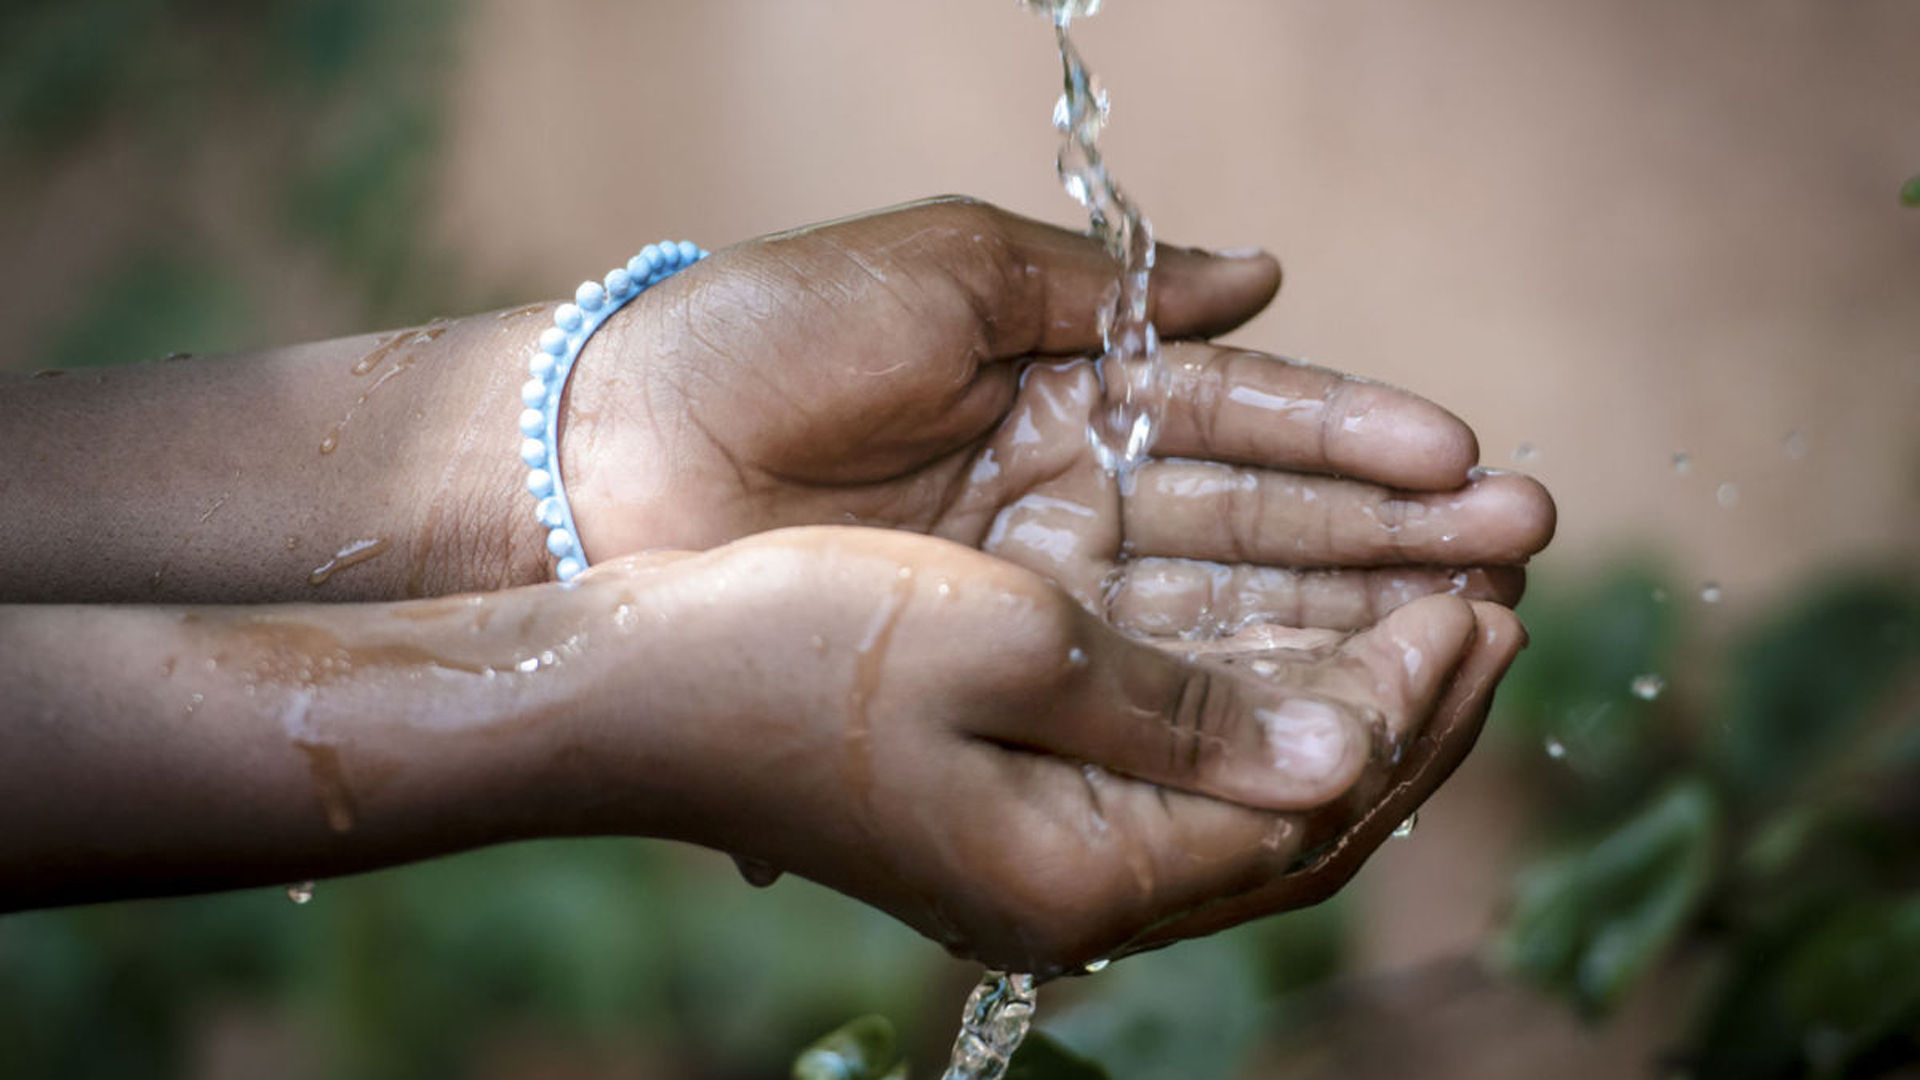 Cuidar el agua que bebemos es primordial para mantener una buena salud y prevenir el cólera